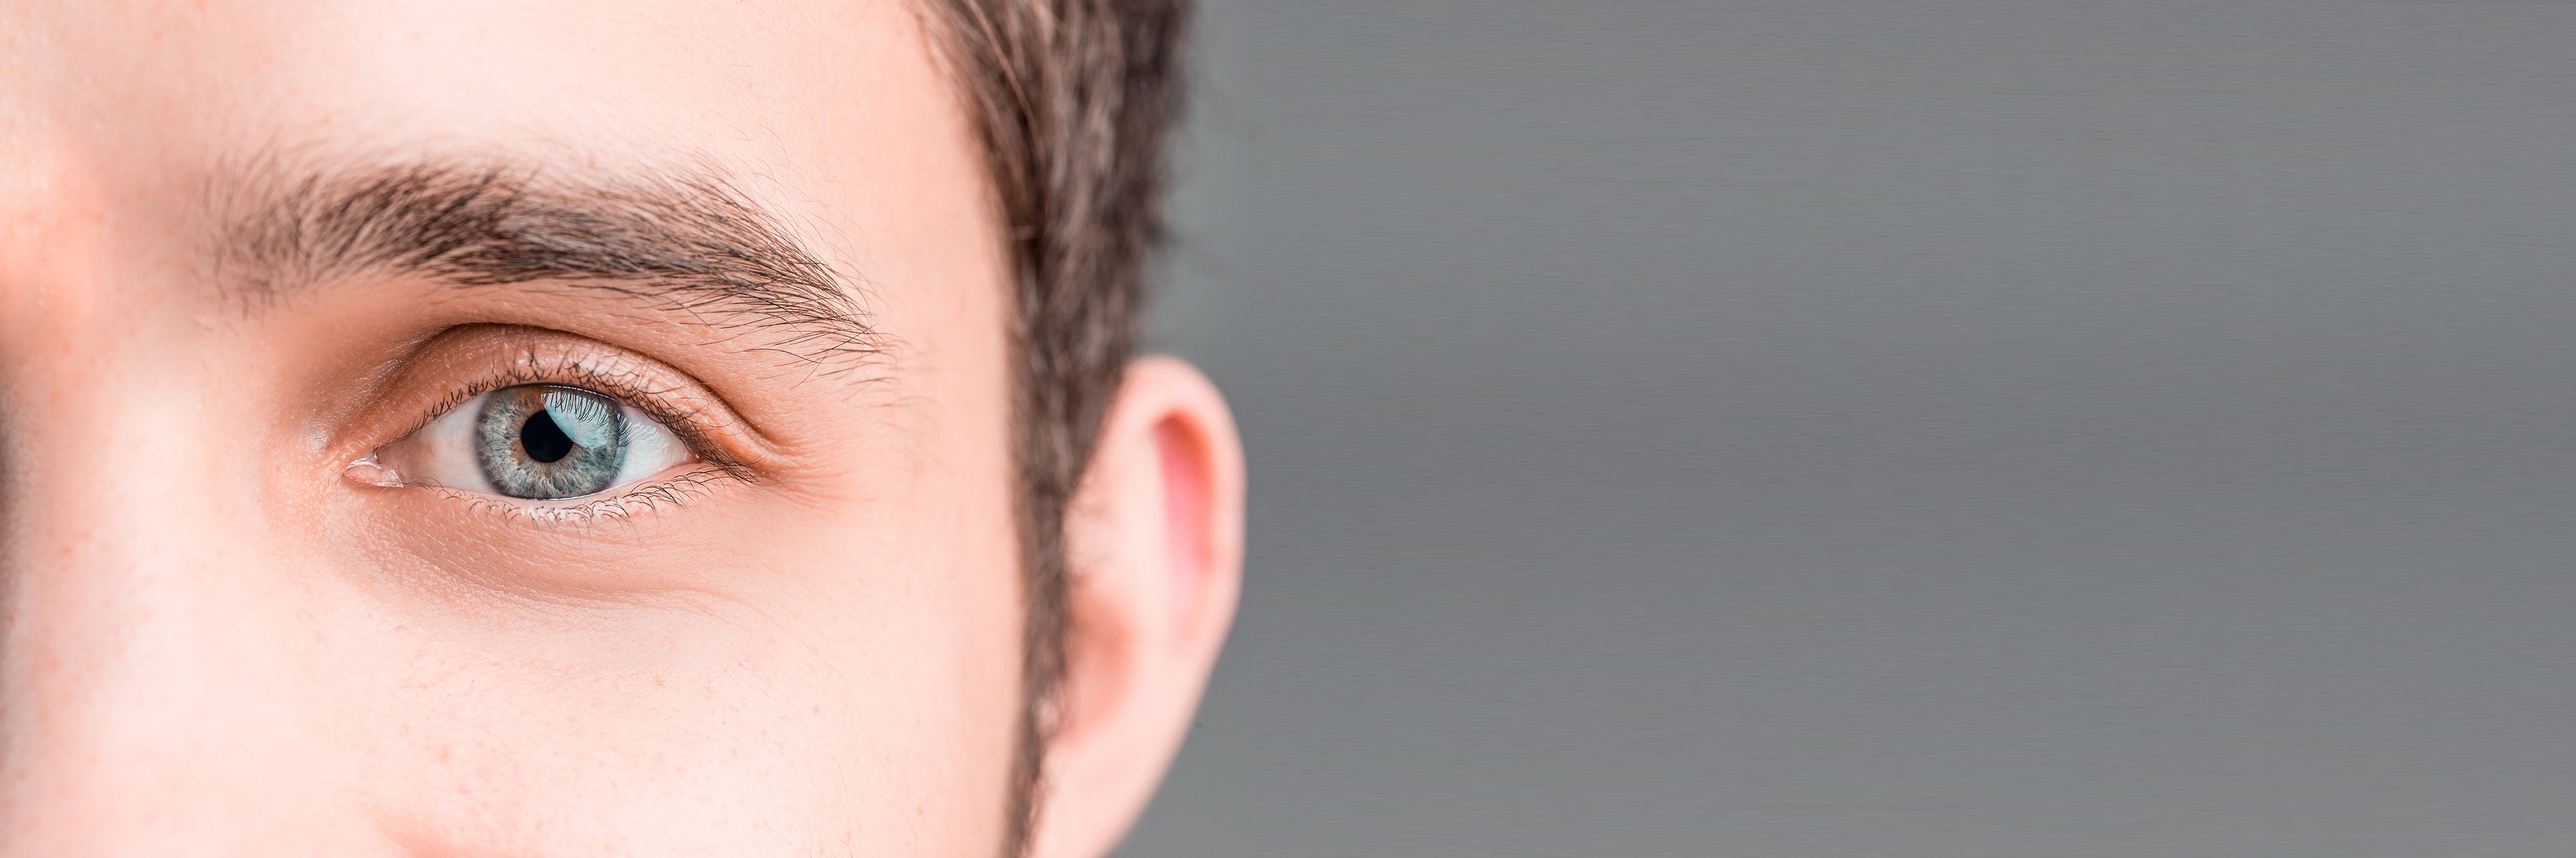 Nahaufnahme eines männlichen Gesichtsausschnitt mit Fokus auf eines der Augen